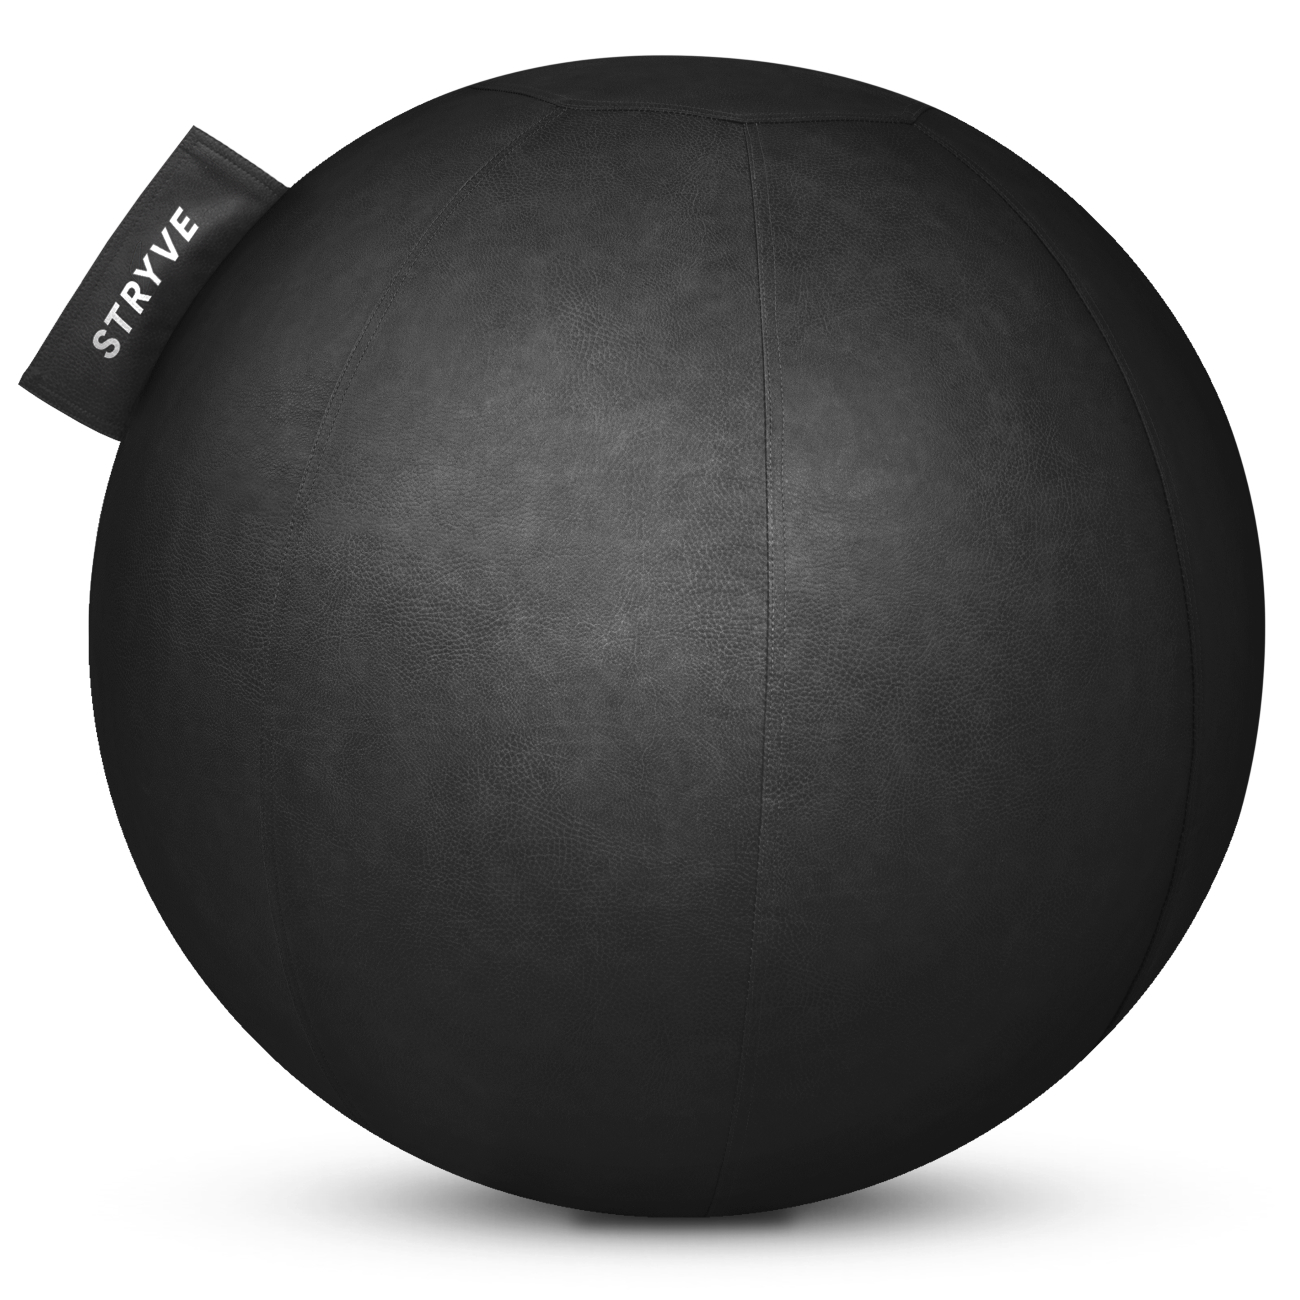 Stryve Active Ball - Gymnastikball mit Funktion und Designauszeichnung